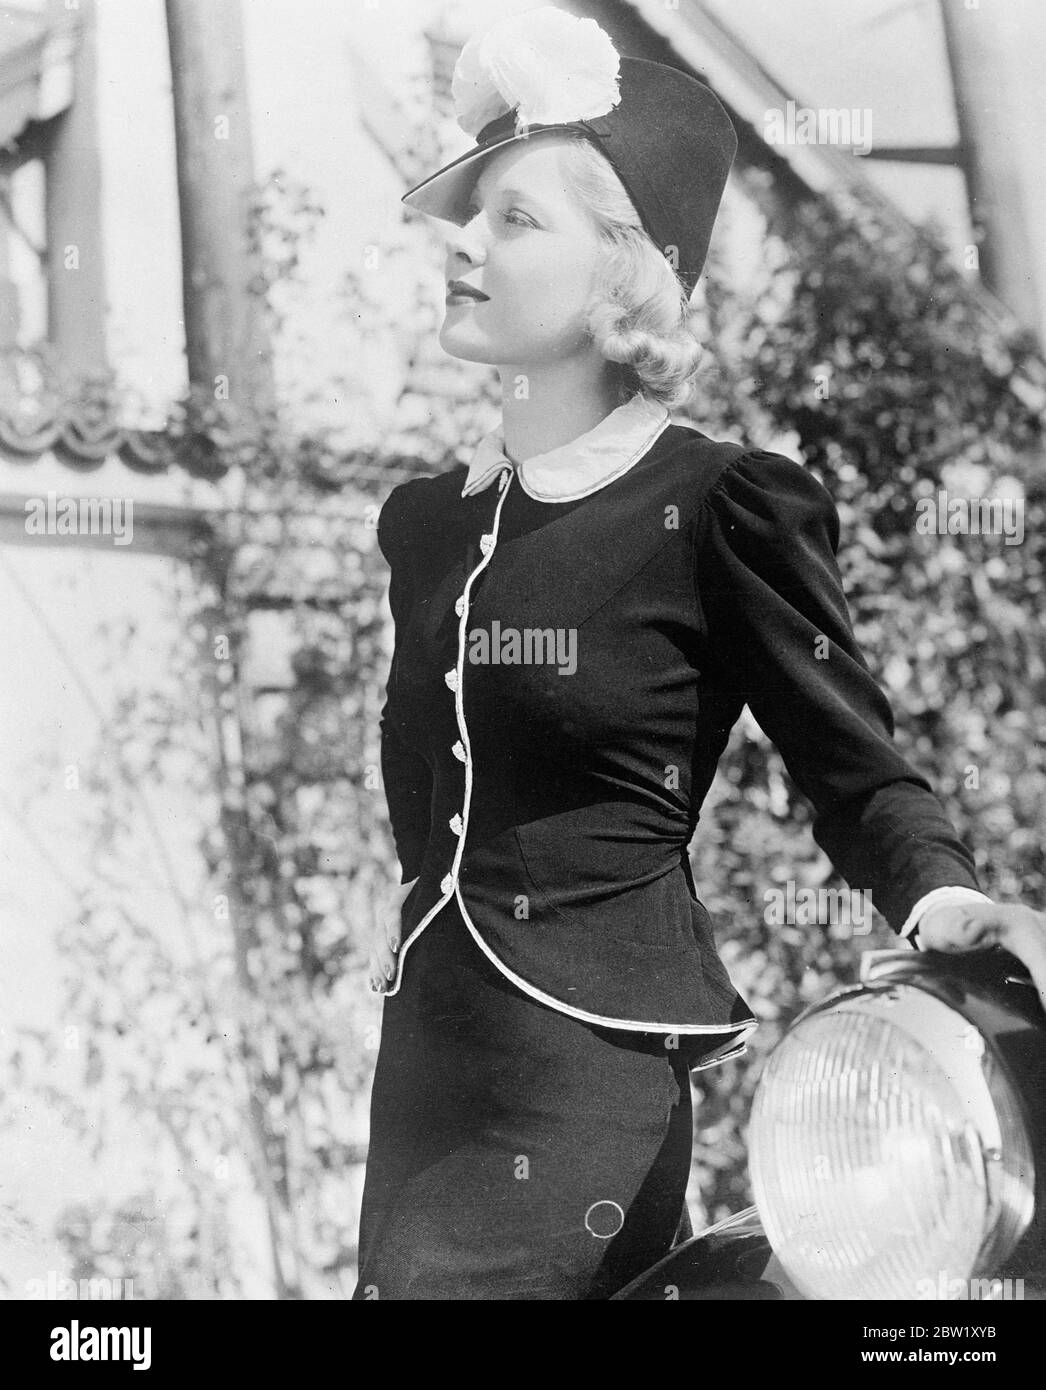 Mary Carlisle, die Hollywood-Filmschauspielerin, trägt ein neues zweiteiliges Modell von Krepp [crêpe/crape] mit einer Jugendlichen Tunika in Weiß mit schmalem Silberrand. Die Knöpfe sind winzige Strass, und eine Schärpe der schwarzen Kreppbinder über den Rücken. Der Hut ist ein smarter schwarzer Stroh mit einer hohen Krone, die von zwei Federbommeln überragt wird. Mai 1937 Stockfoto